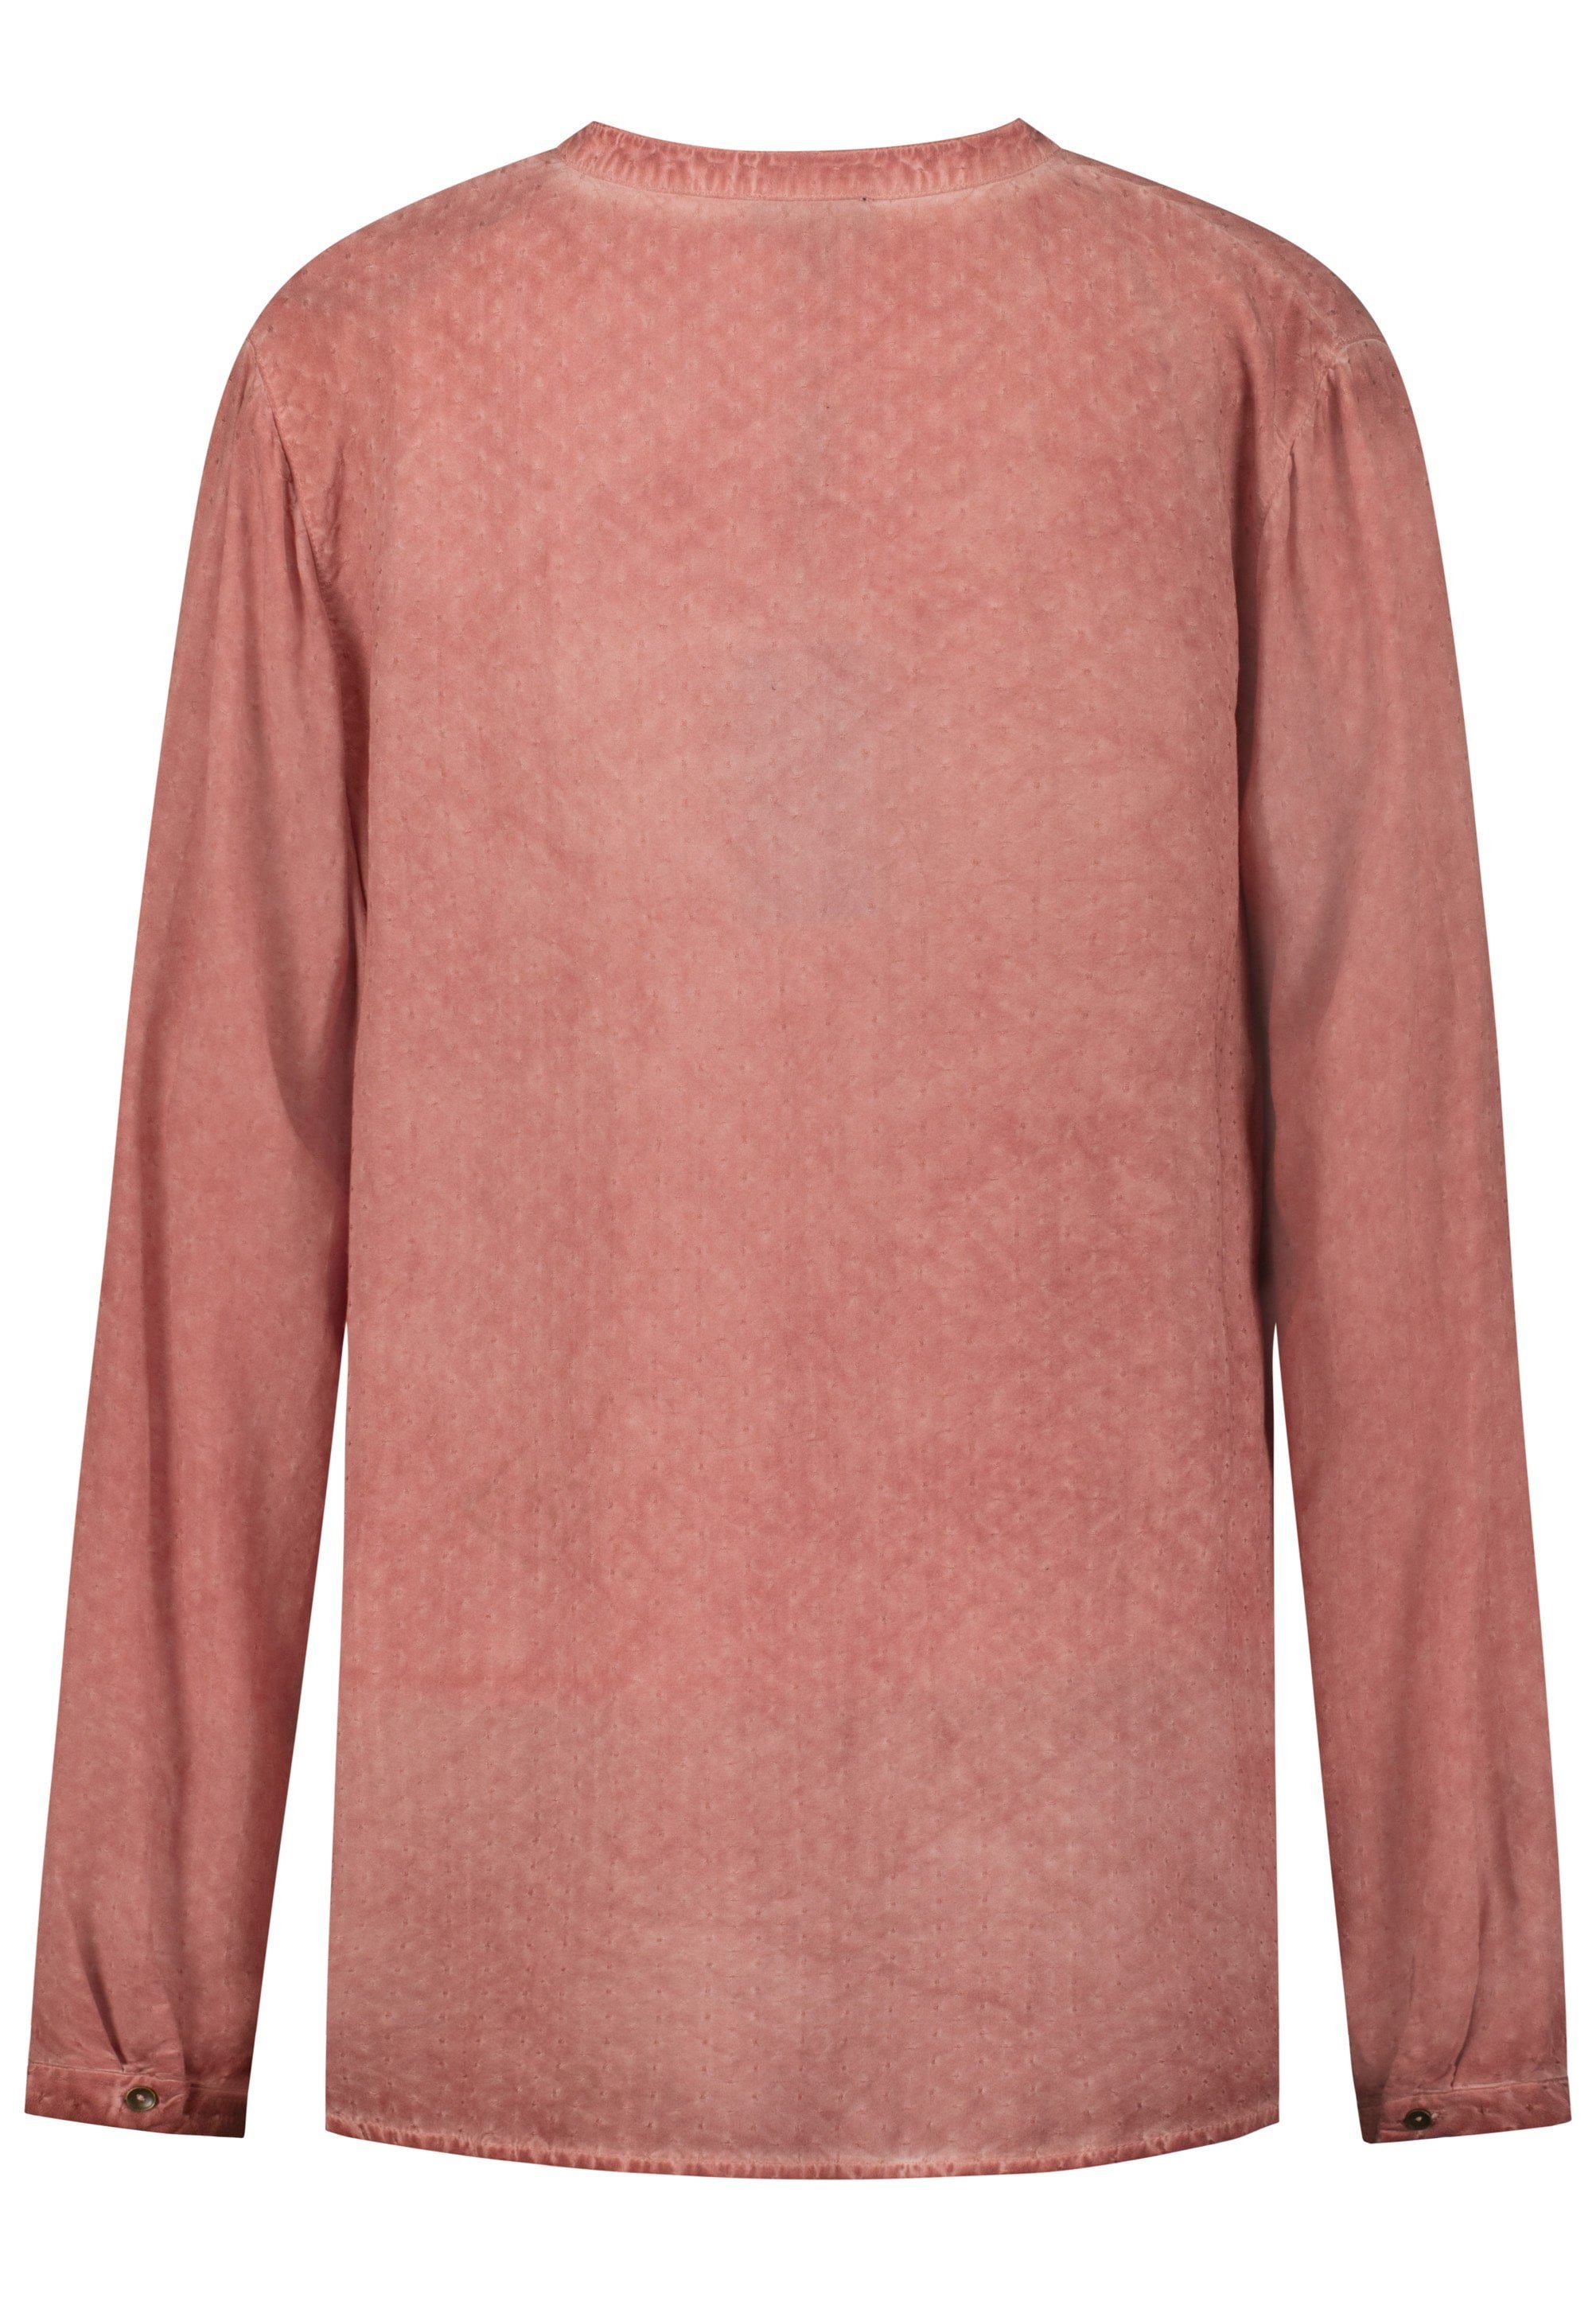 October Klassische modischem Tunika-Ausschnitt Bluse mit rosa